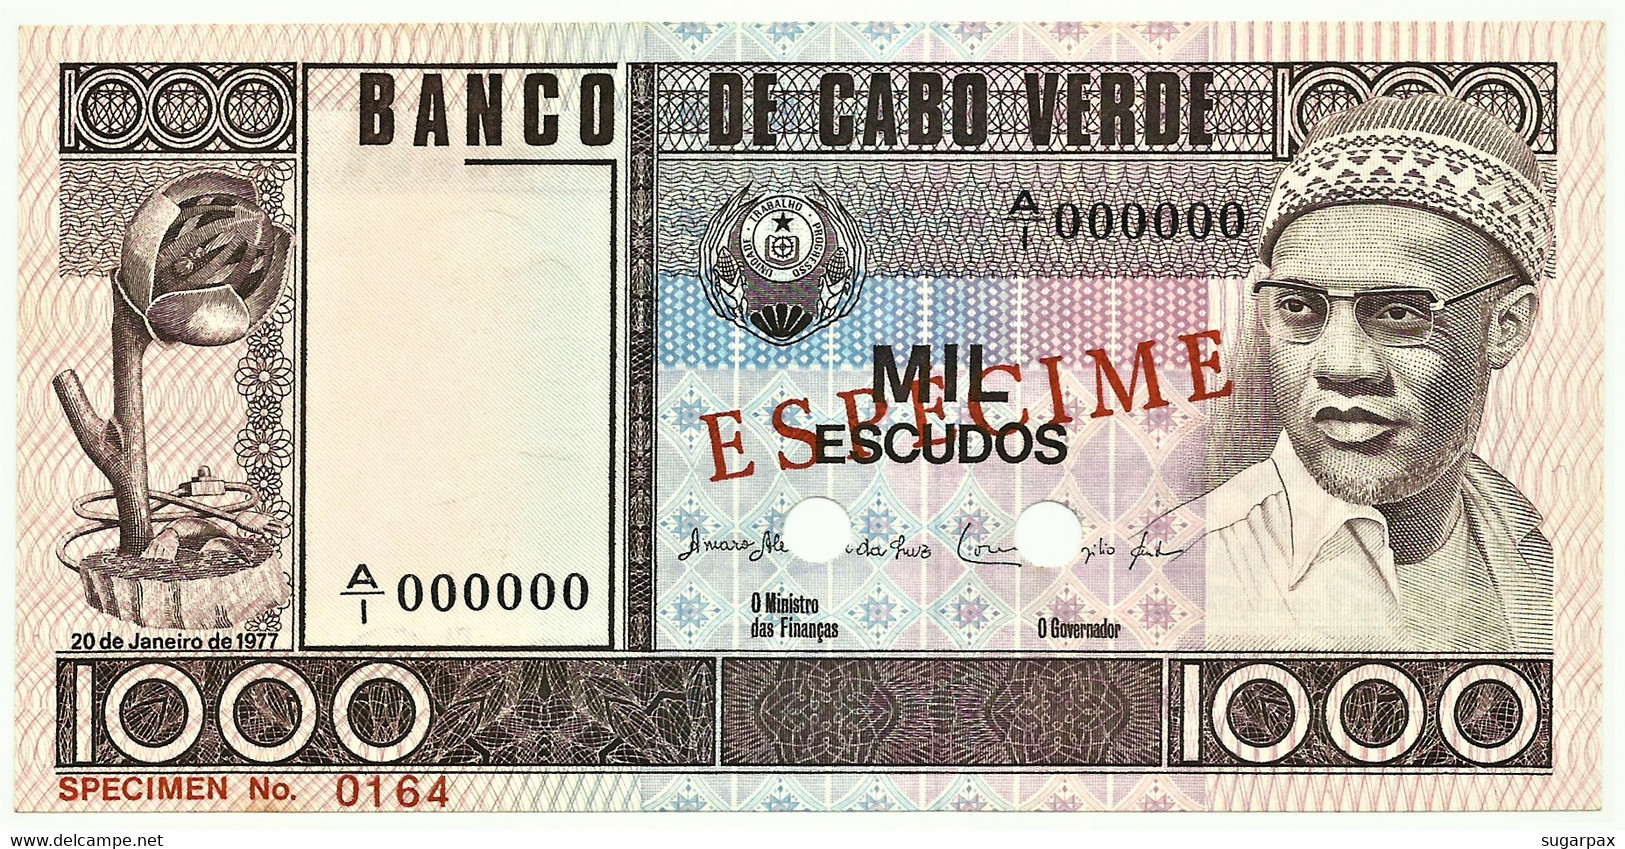 CAPE VERDE - 1000 ESCUDOS - 20.01.1977 - Pick 56.s1 - Unc. - ESPÉCIME In RED - 1.000 - Cap Verde